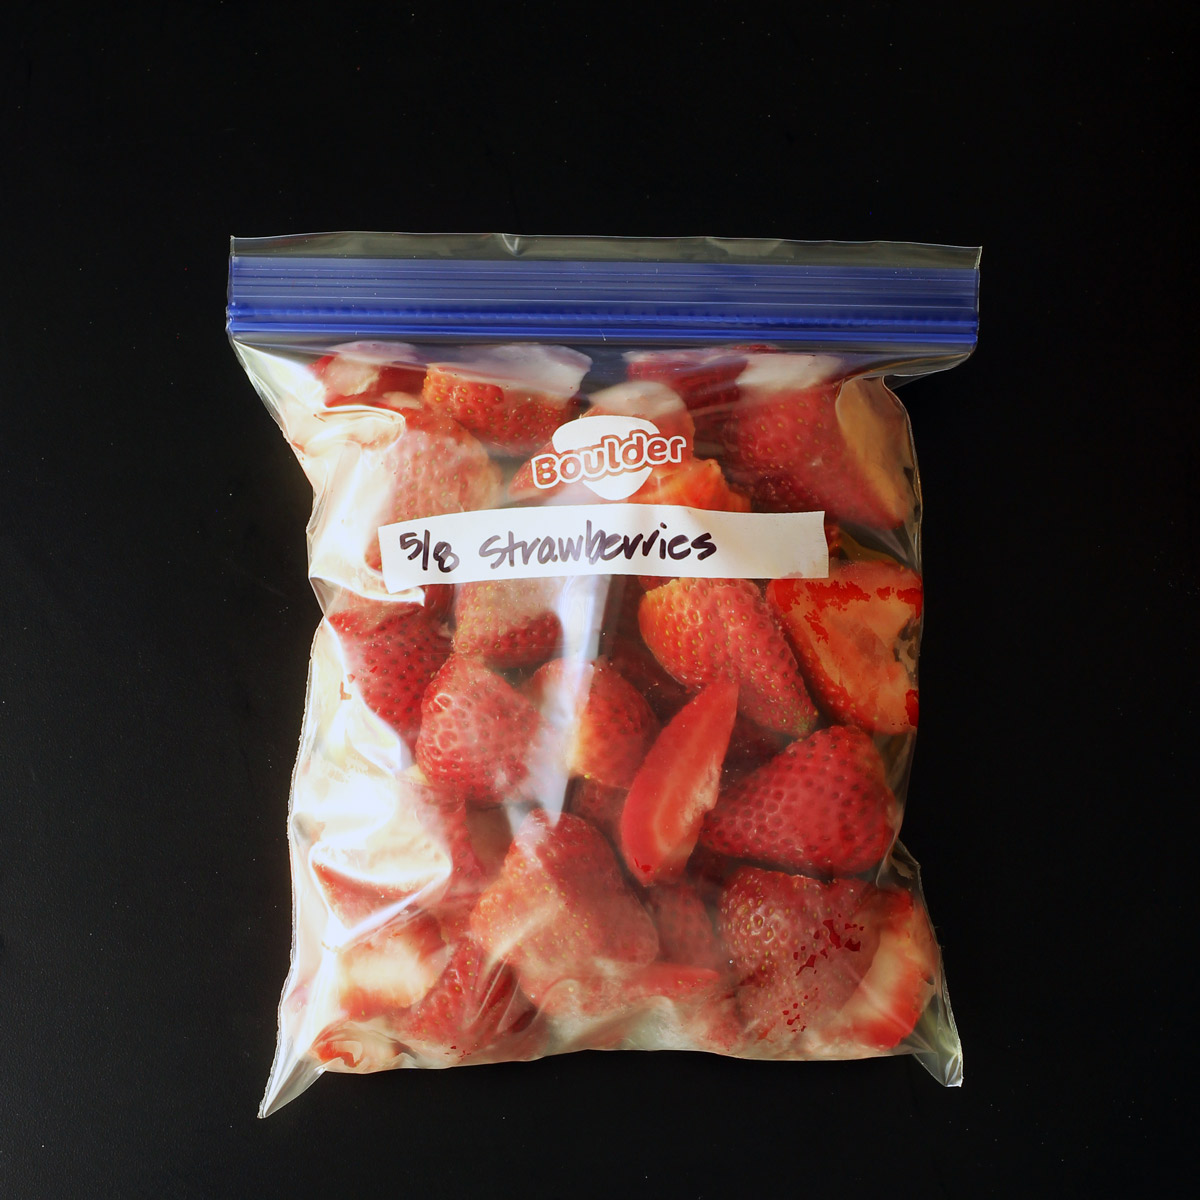 ziptop freezer bag of frozen strawberries.